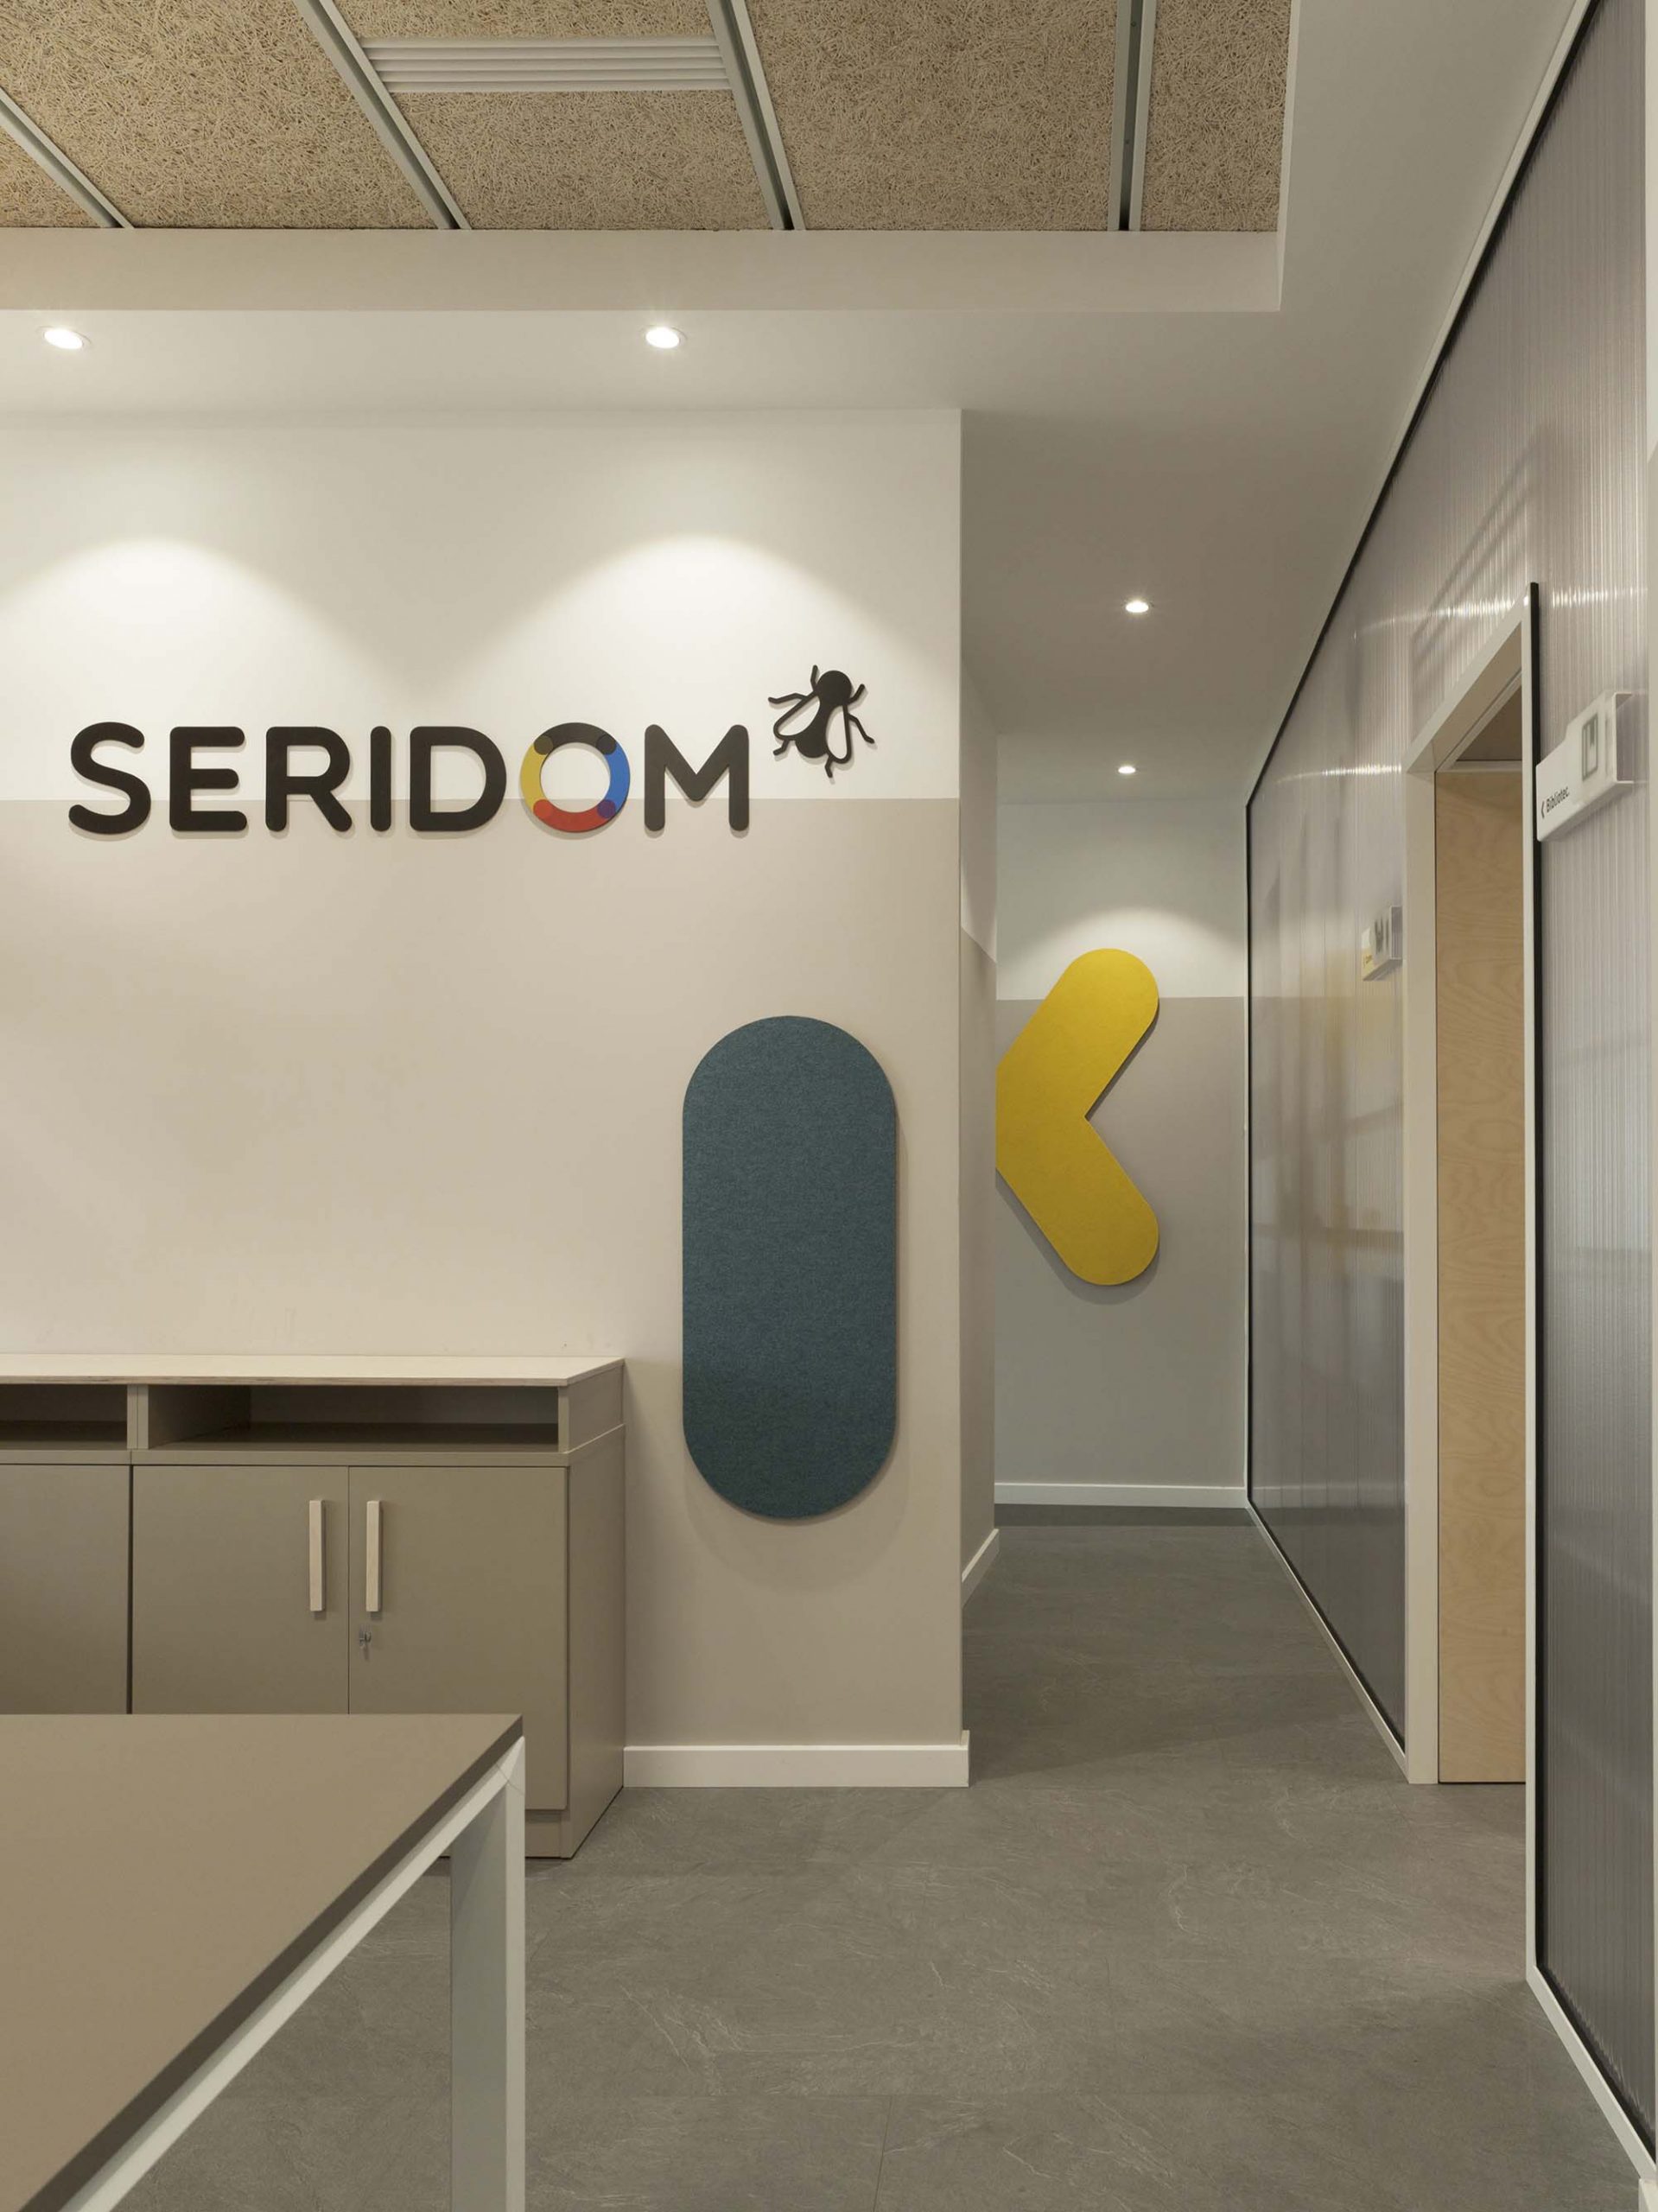 Proyecto de interiorismo para las oficinas de Seridom.